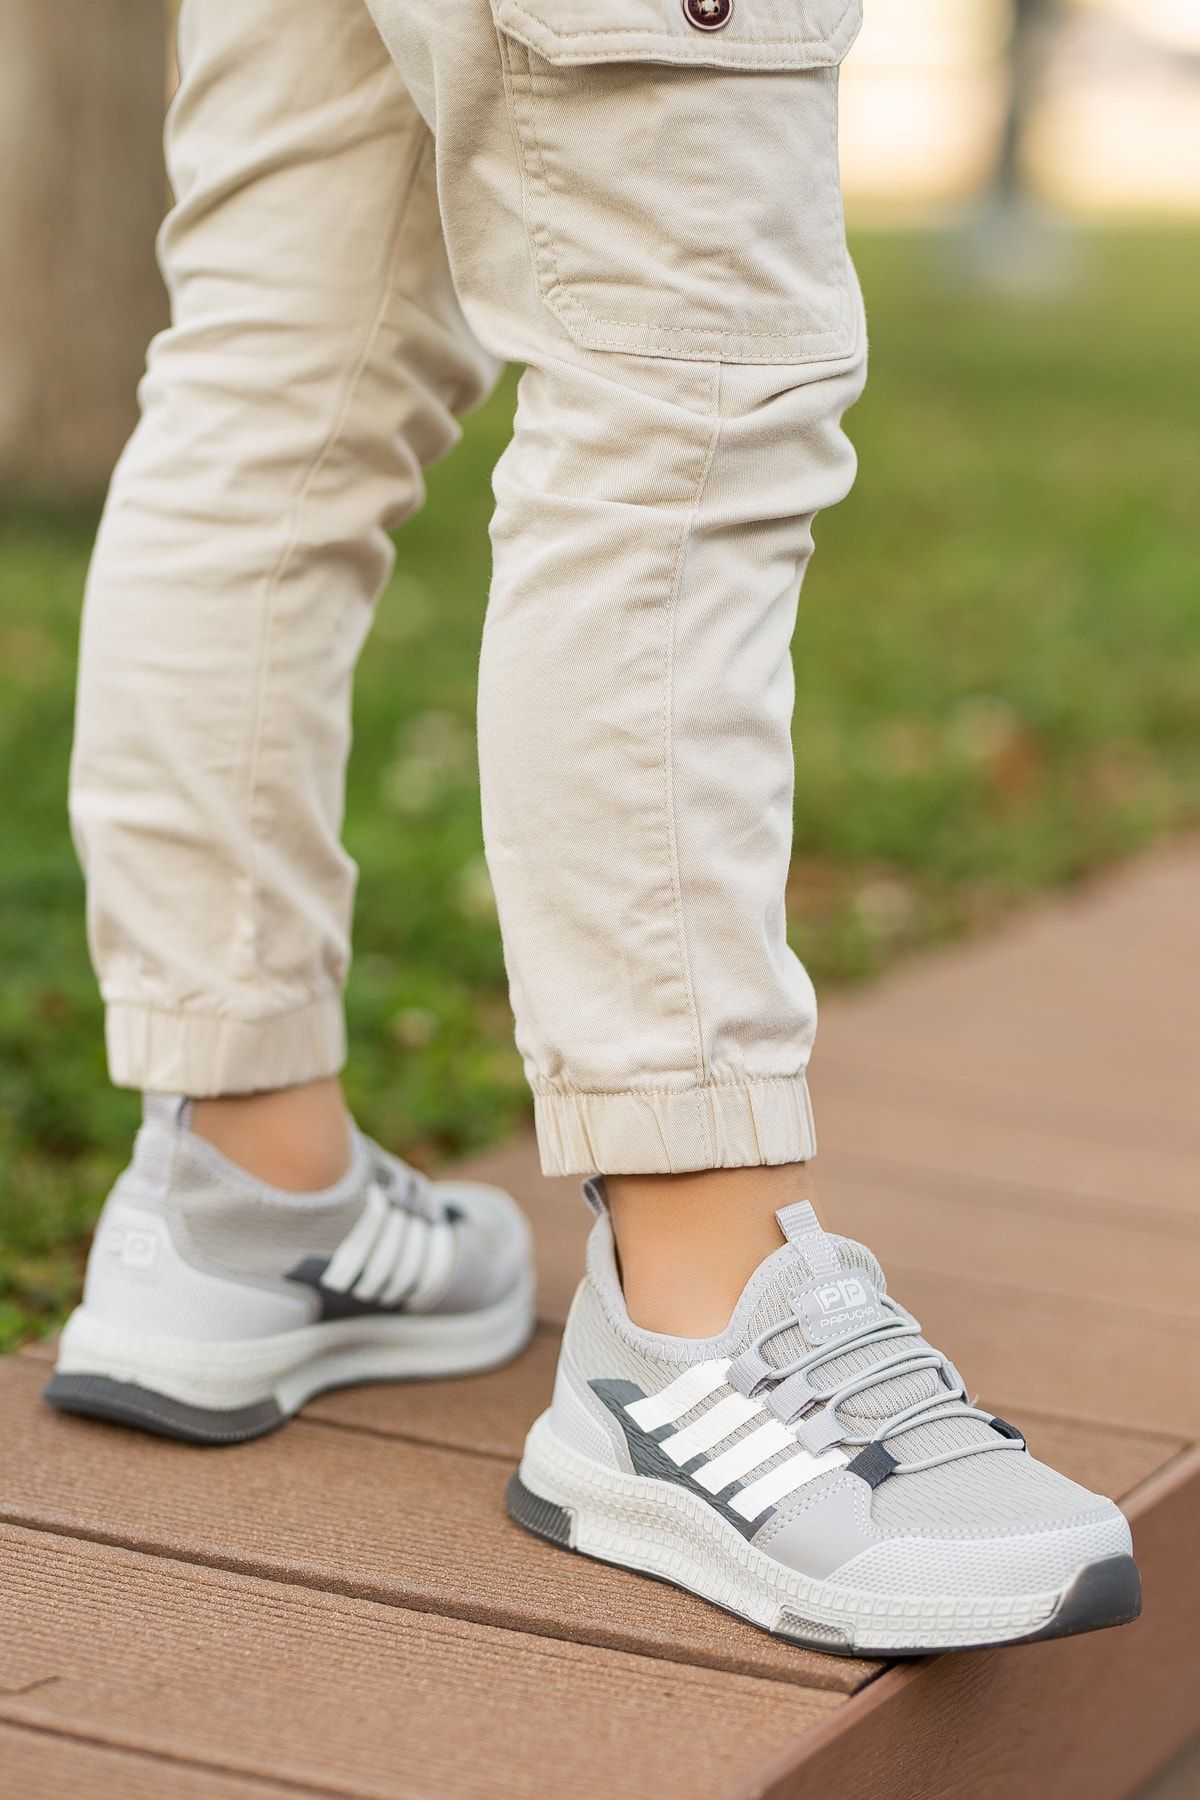 BOUIS Çocuk Unisex Fosforlu Günlük Buz Füme Bağcıklı Rahat Nefes Alabilen Triko Esnek Hafif Şık Sneaker